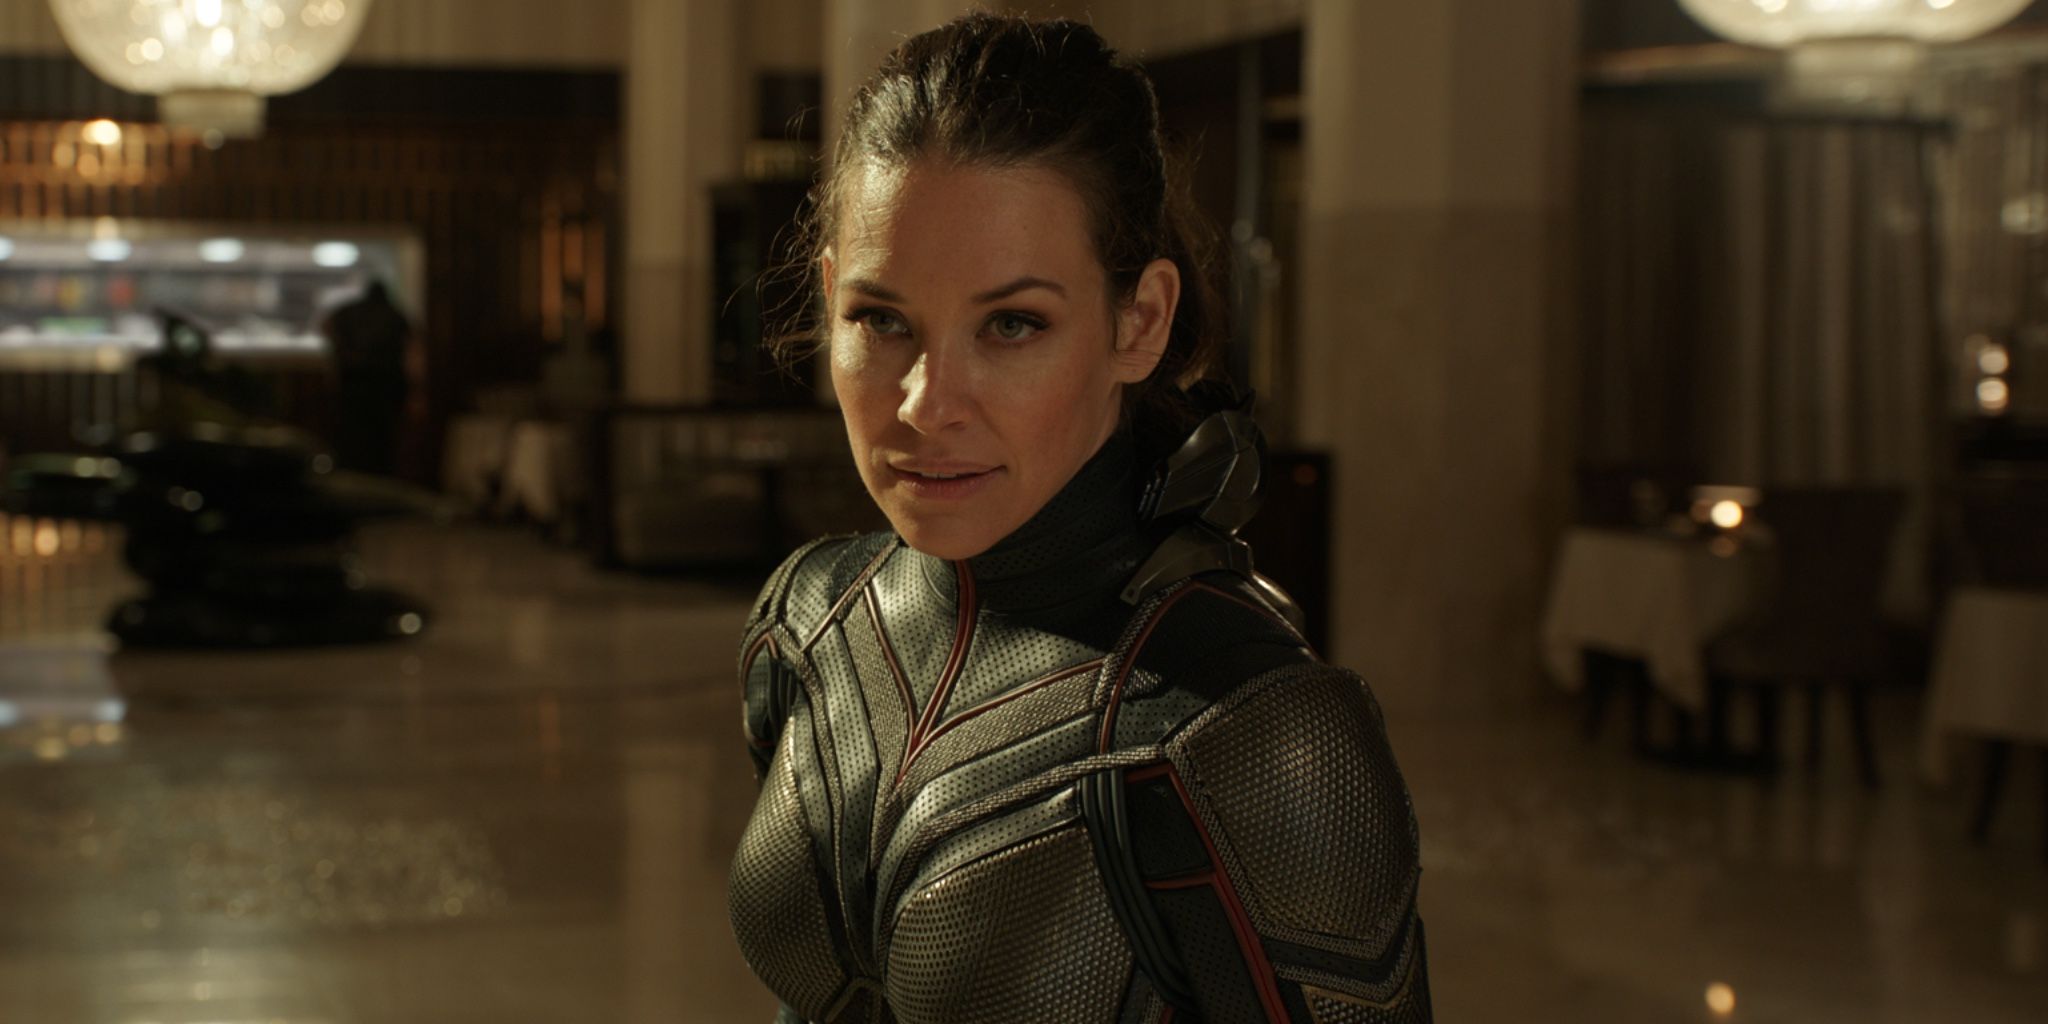 Evangeline Lilly as Hope van Dyne/Wasp in Ant-Man